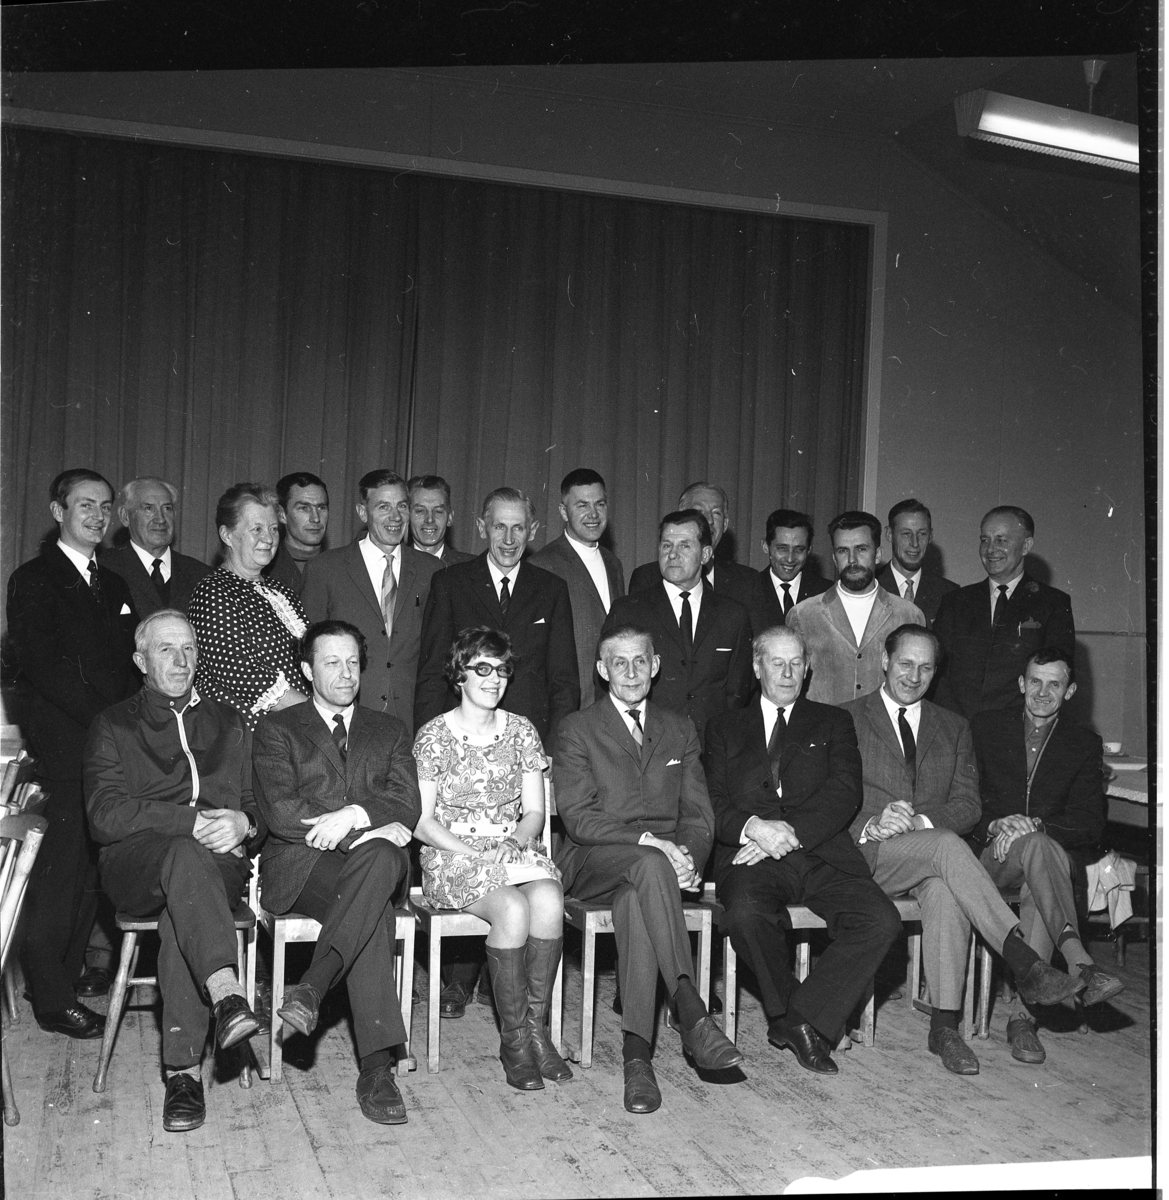 En grupp på 21 personer varav två kvinnor och resten män. De står i två rader varav den första raden är sittande.